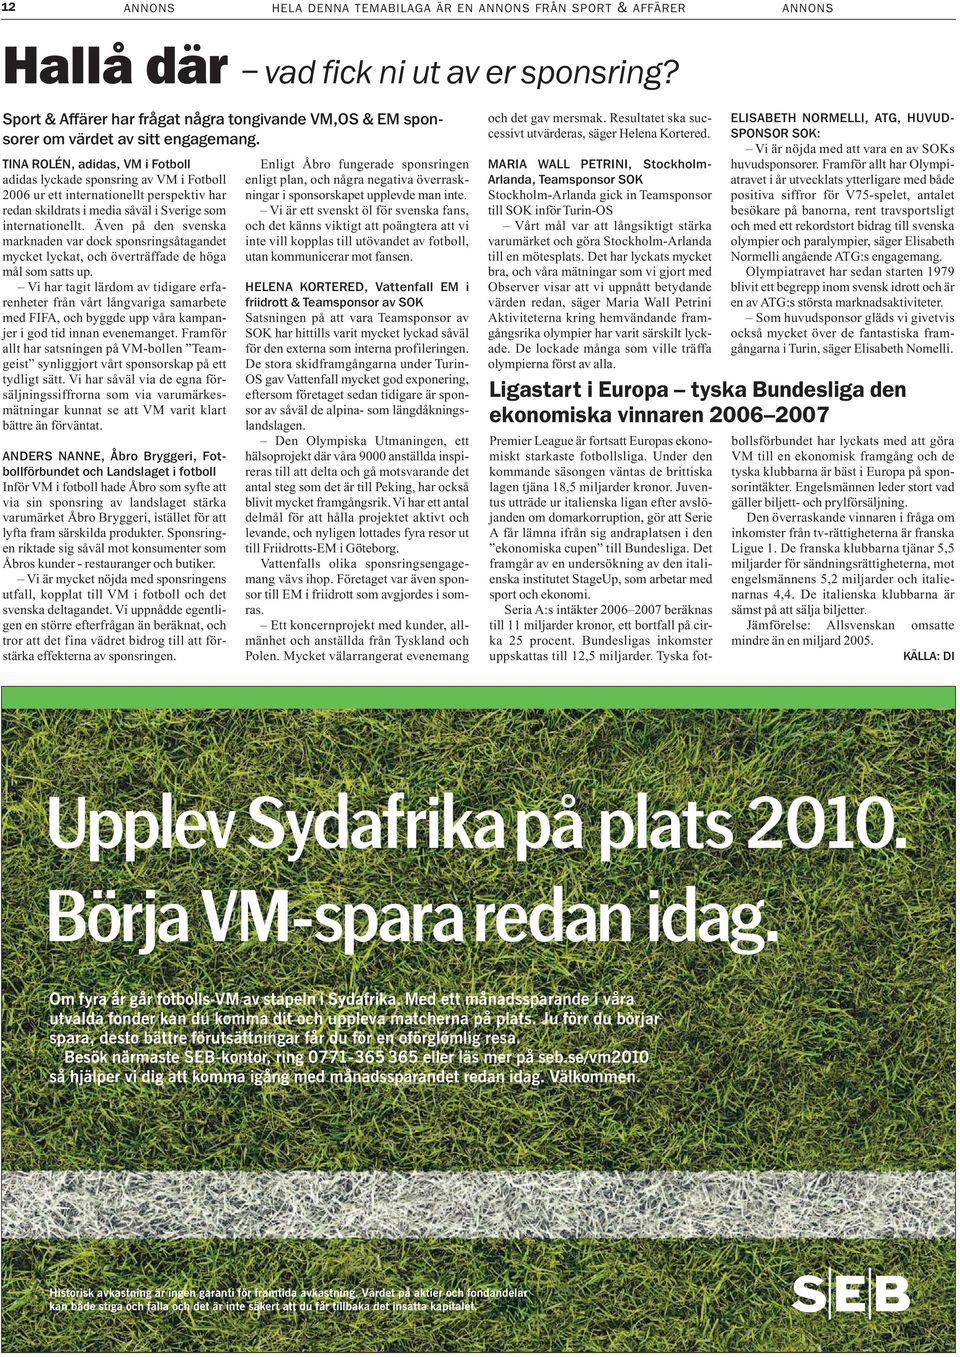 TINA ROLÉN, adidas, VM i Fotboll adidas lyckade sponsring av VM i Fotboll 2006 ur ett internationellt perspektiv har redan skildrats i media såväl i Sverige som internationellt.